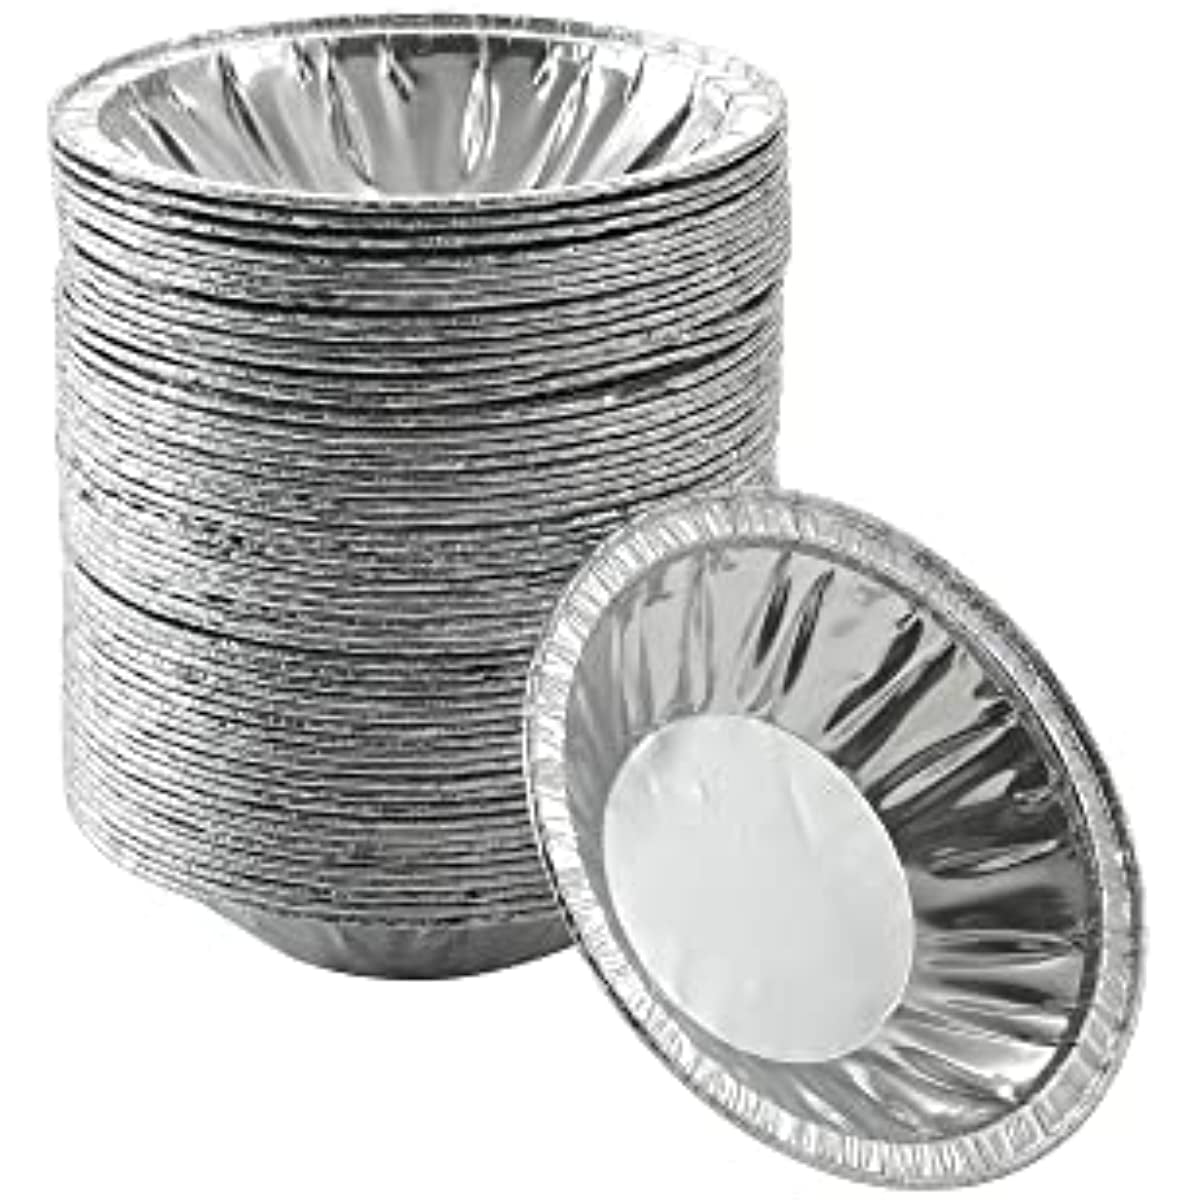 Shenmeida Aluminum Foil Pie Pan, 20pcs Pie Tin Disposable Tart Pans Mini Pie Pans Aluminum Foil Tins Plates Baking Foil Pans for Pizza Pies Quiche